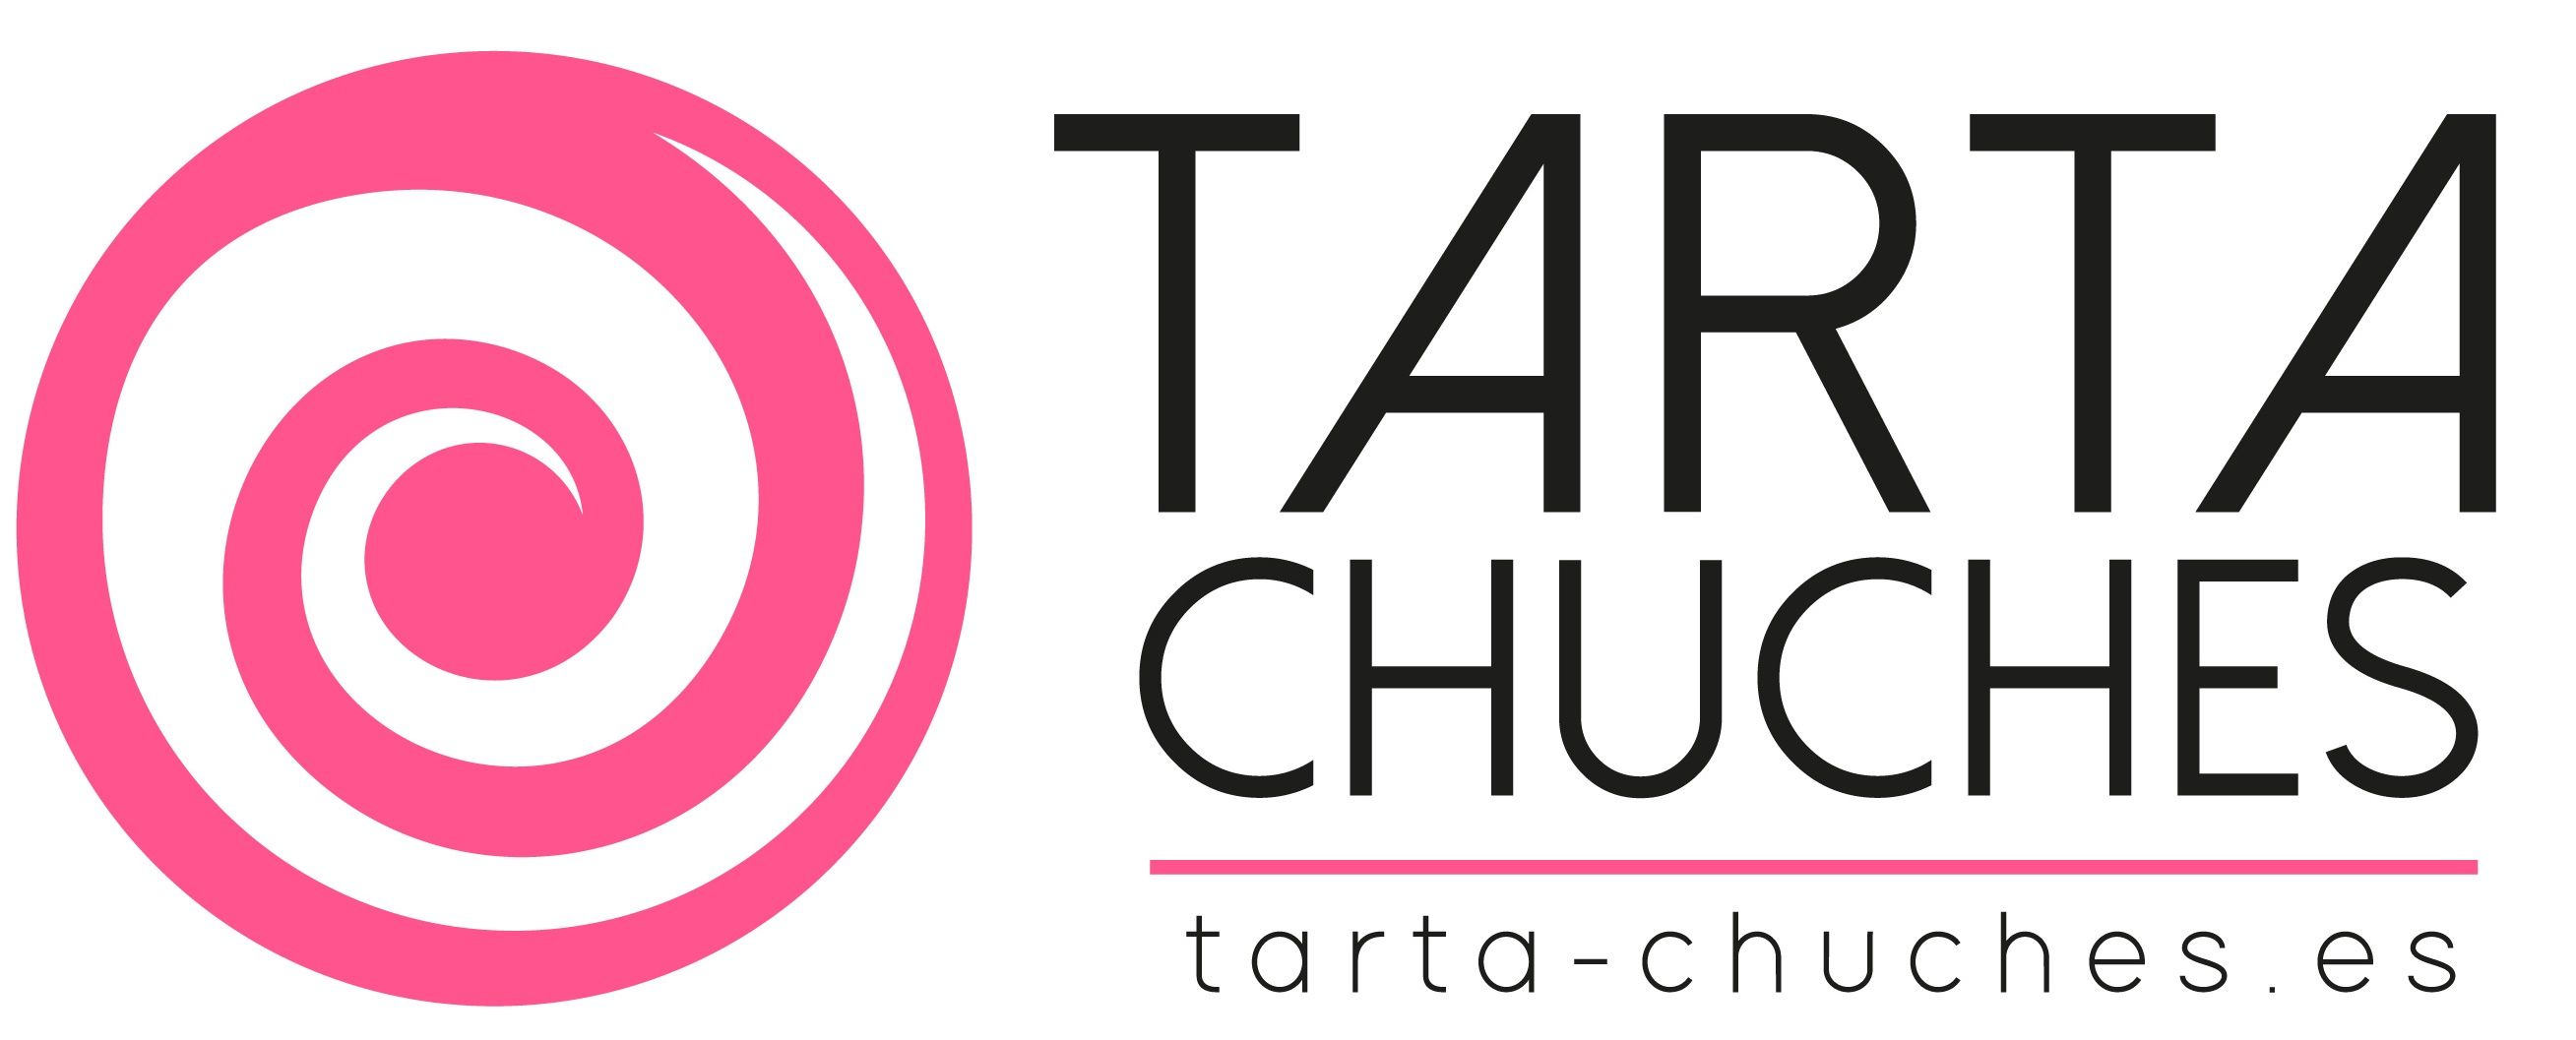 Tarta-chuches